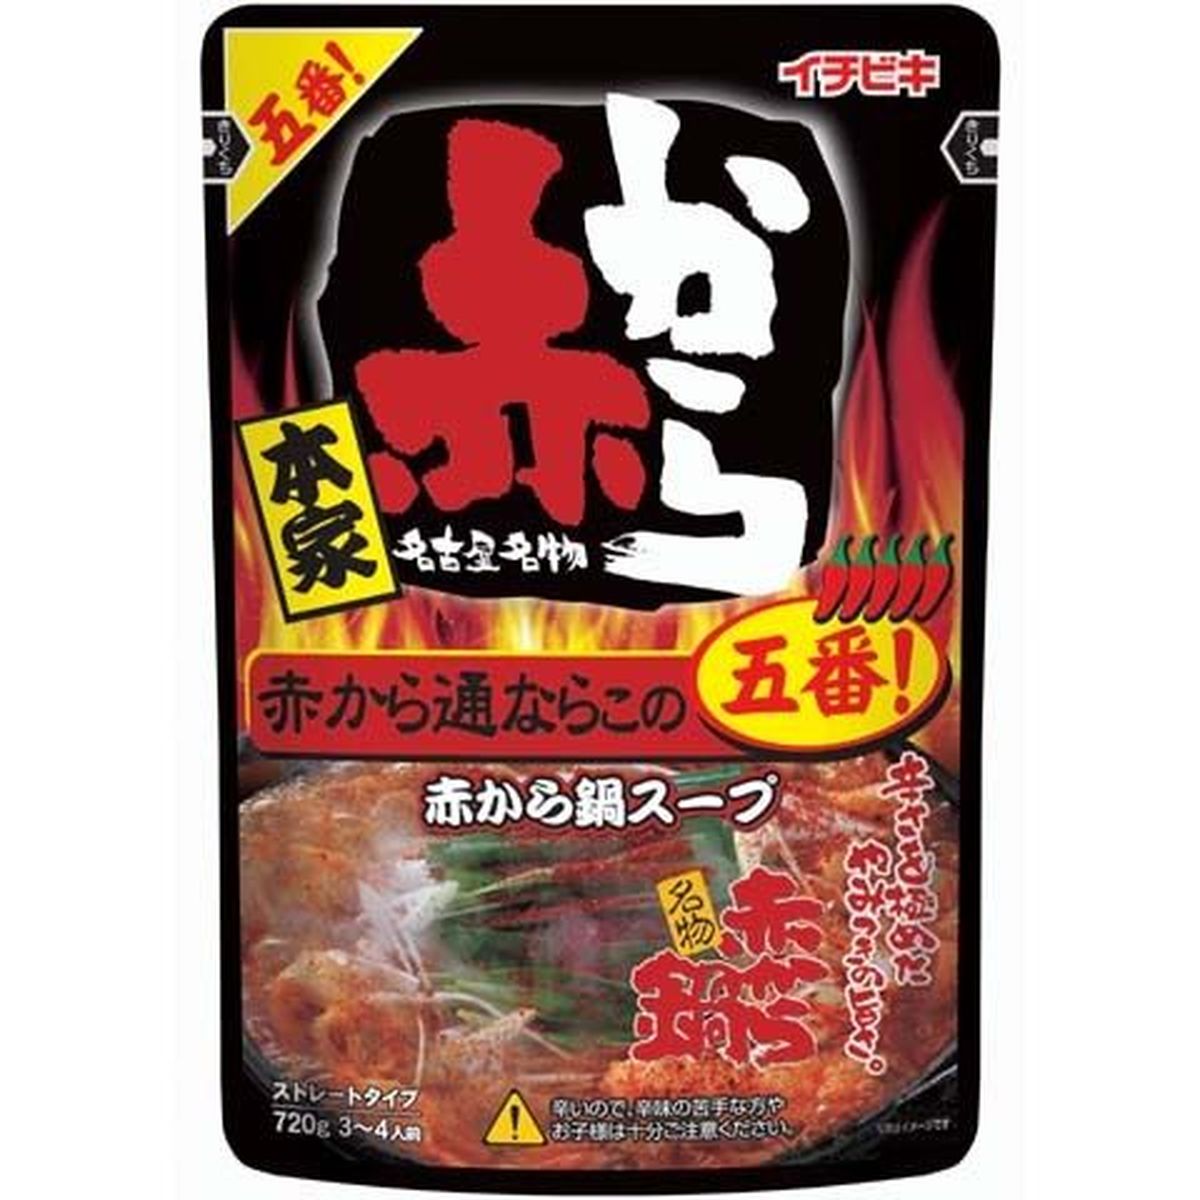 【10個入リ】イチビキ ストレート赤カラ鍋スープ 5番 720g